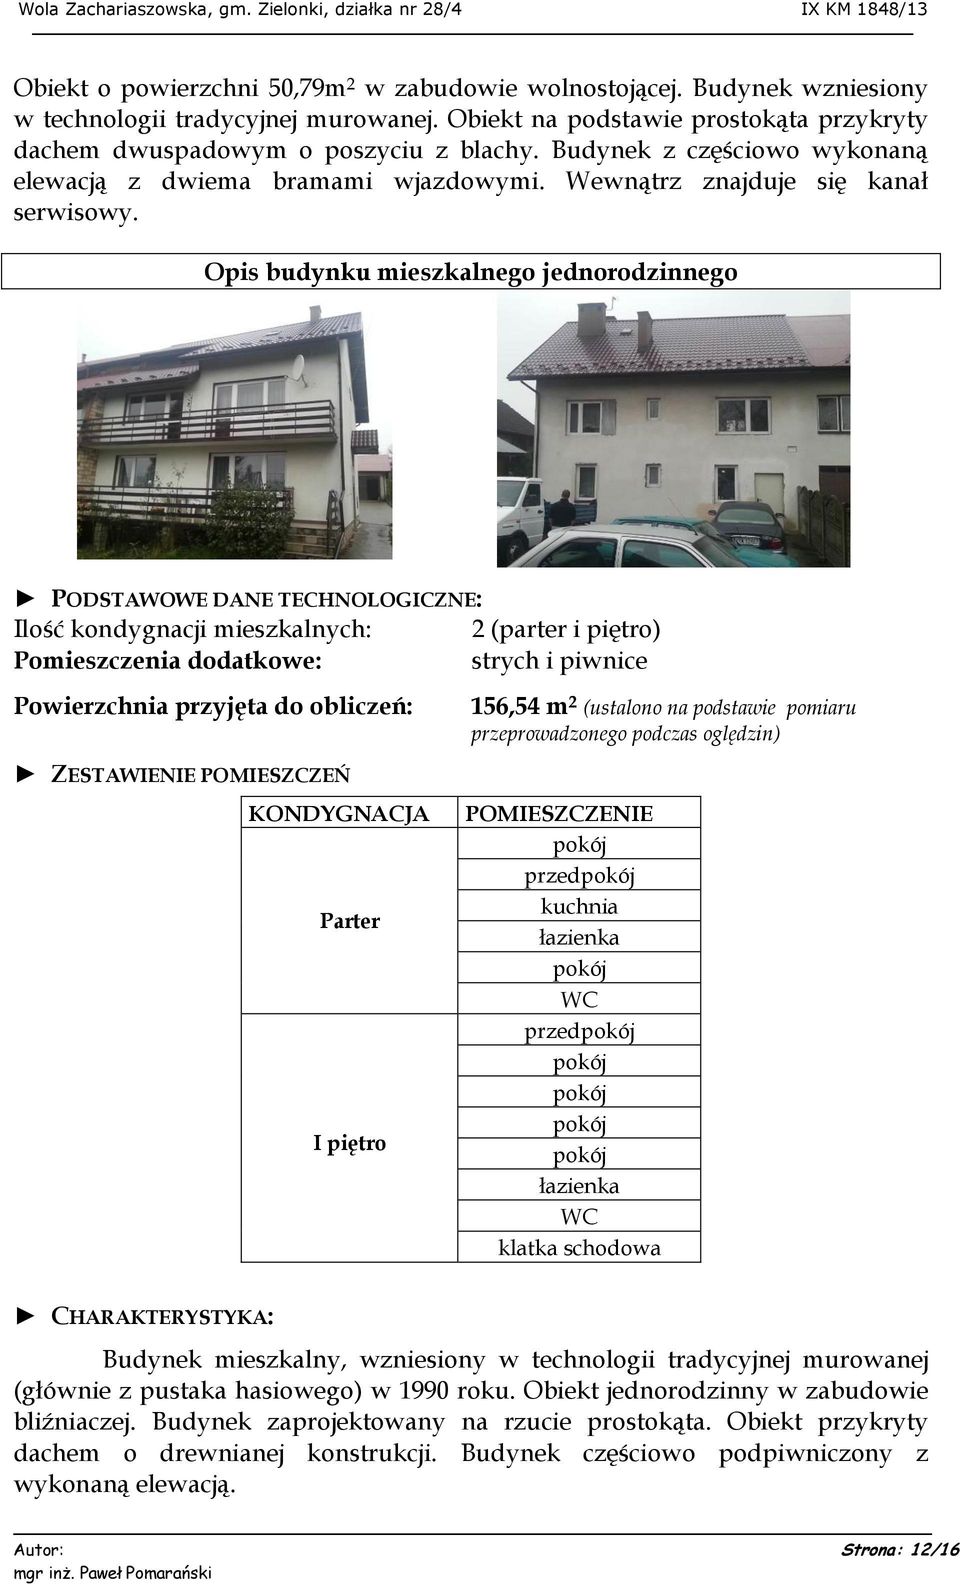 Opis budynku mieszkalnego jednorodzinnego PODSTAWOWE DANE TECHNOLOGICZNE: Ilość kondygnacji mieszkalnych: Pomieszczenia dodatkowe: Powierzchnia przyjęta do obliczeń: 2 (parter i piętro) strych i